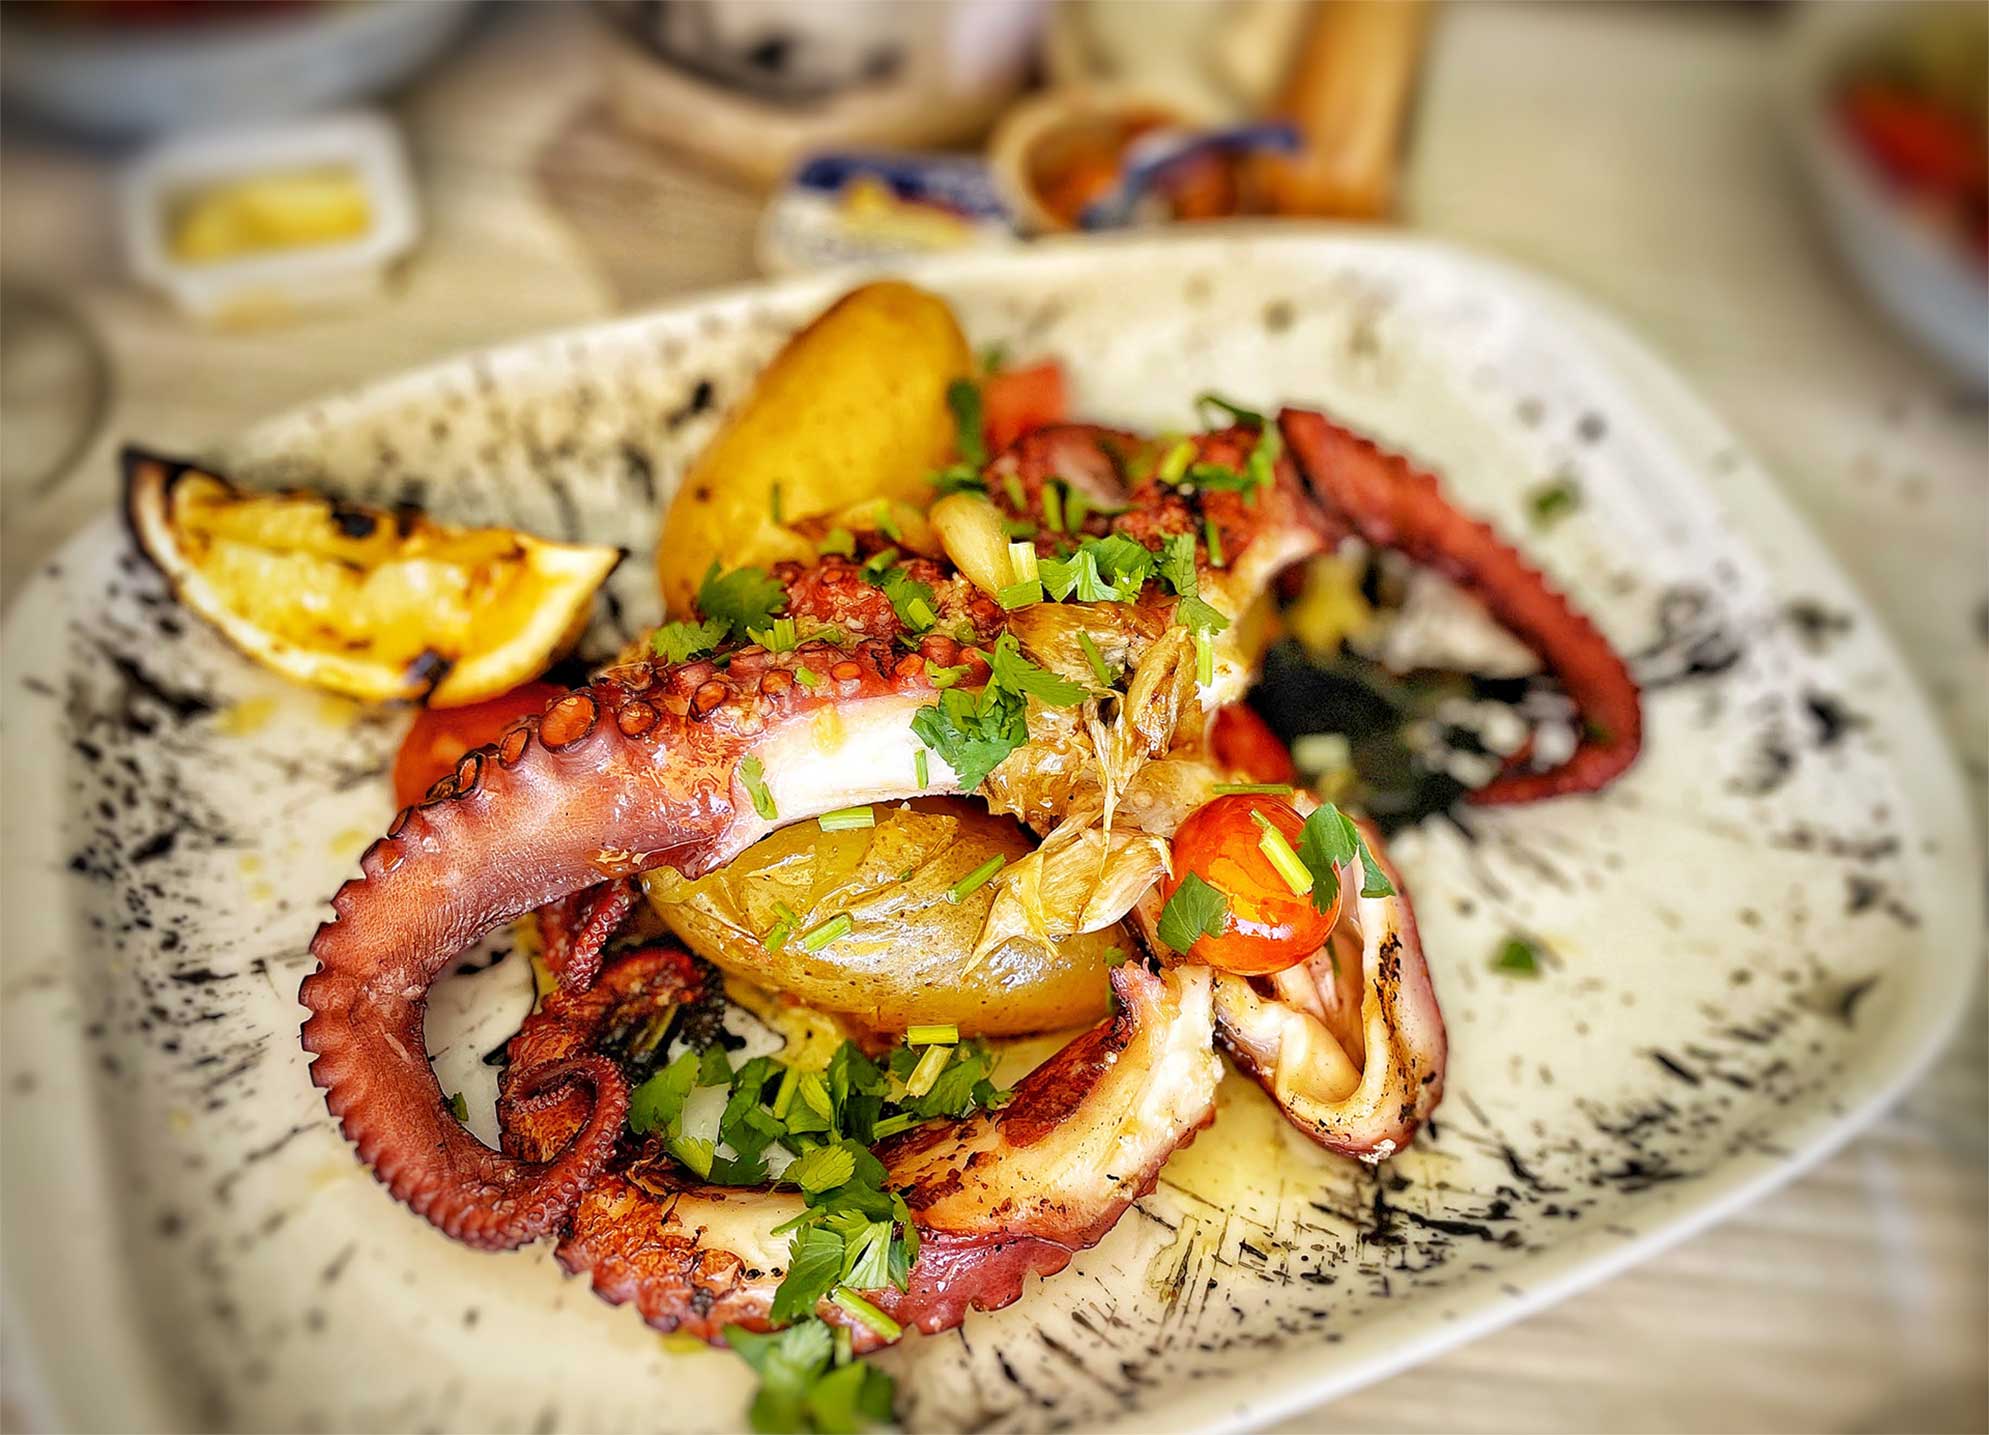 Polvo o lagareiro, a tradicional Portuguese octopus preparation